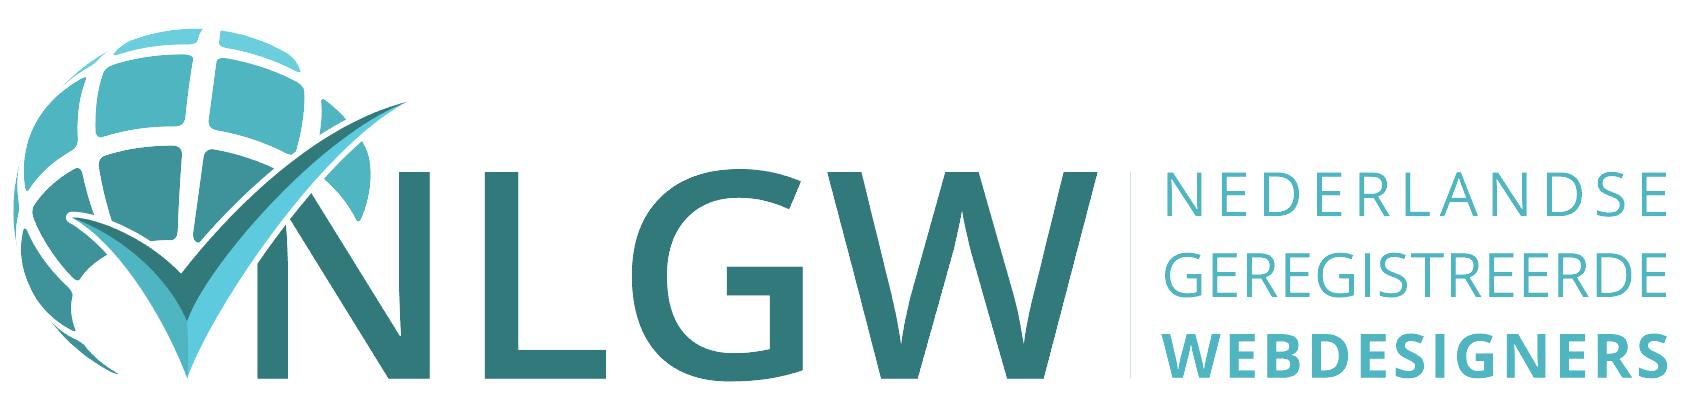 nlgw logo